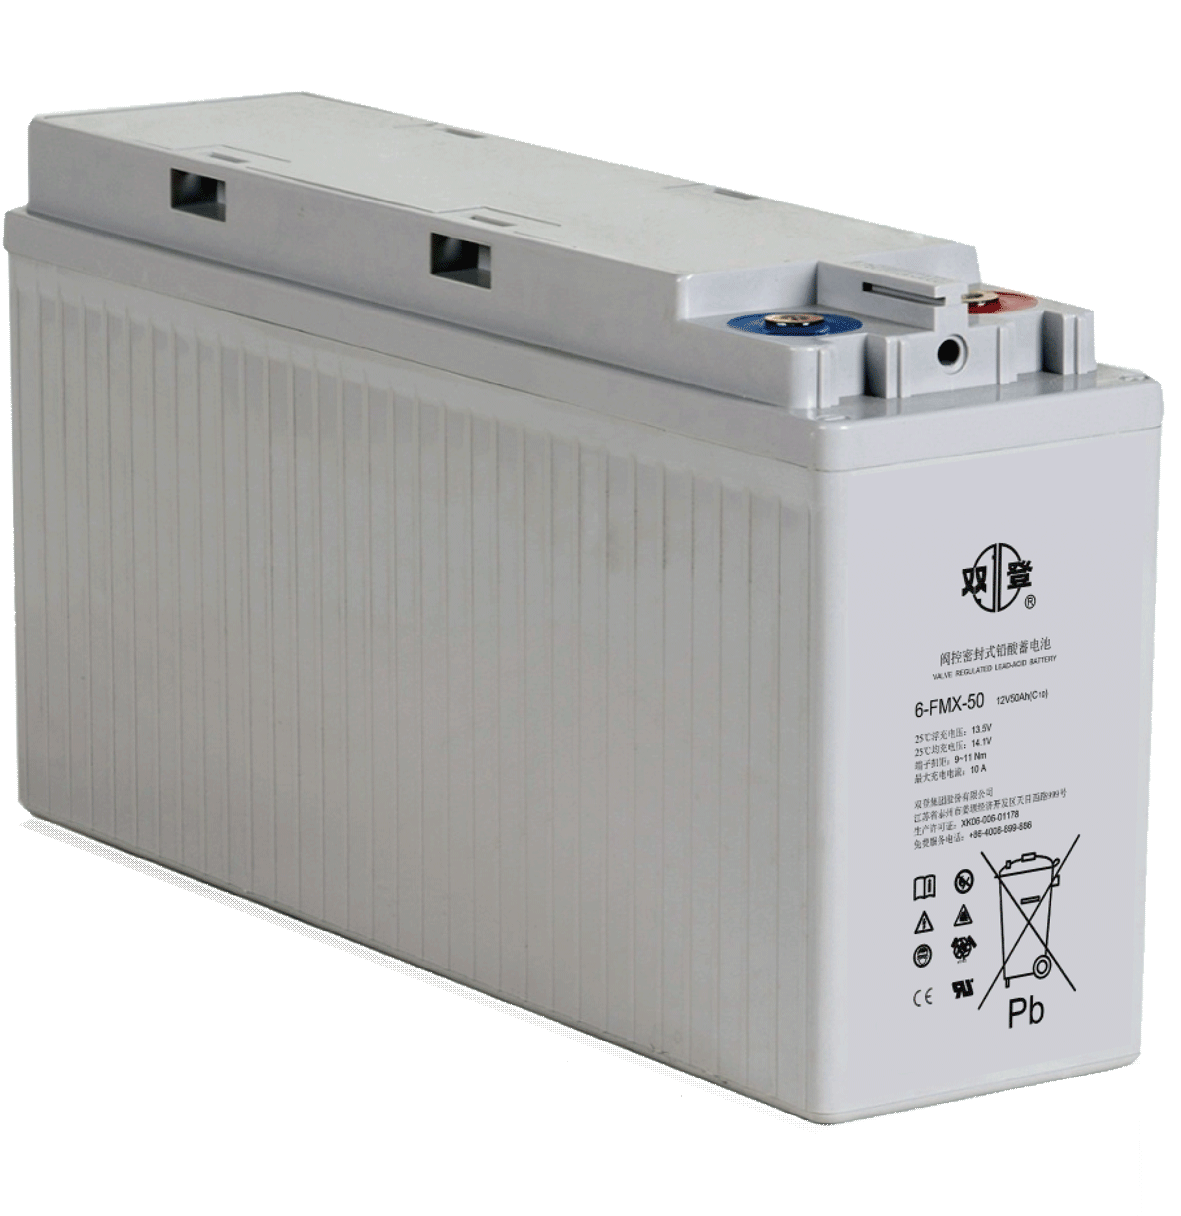 双登蓄电池6-FMX-50 双登狭长蓄电池原装价格